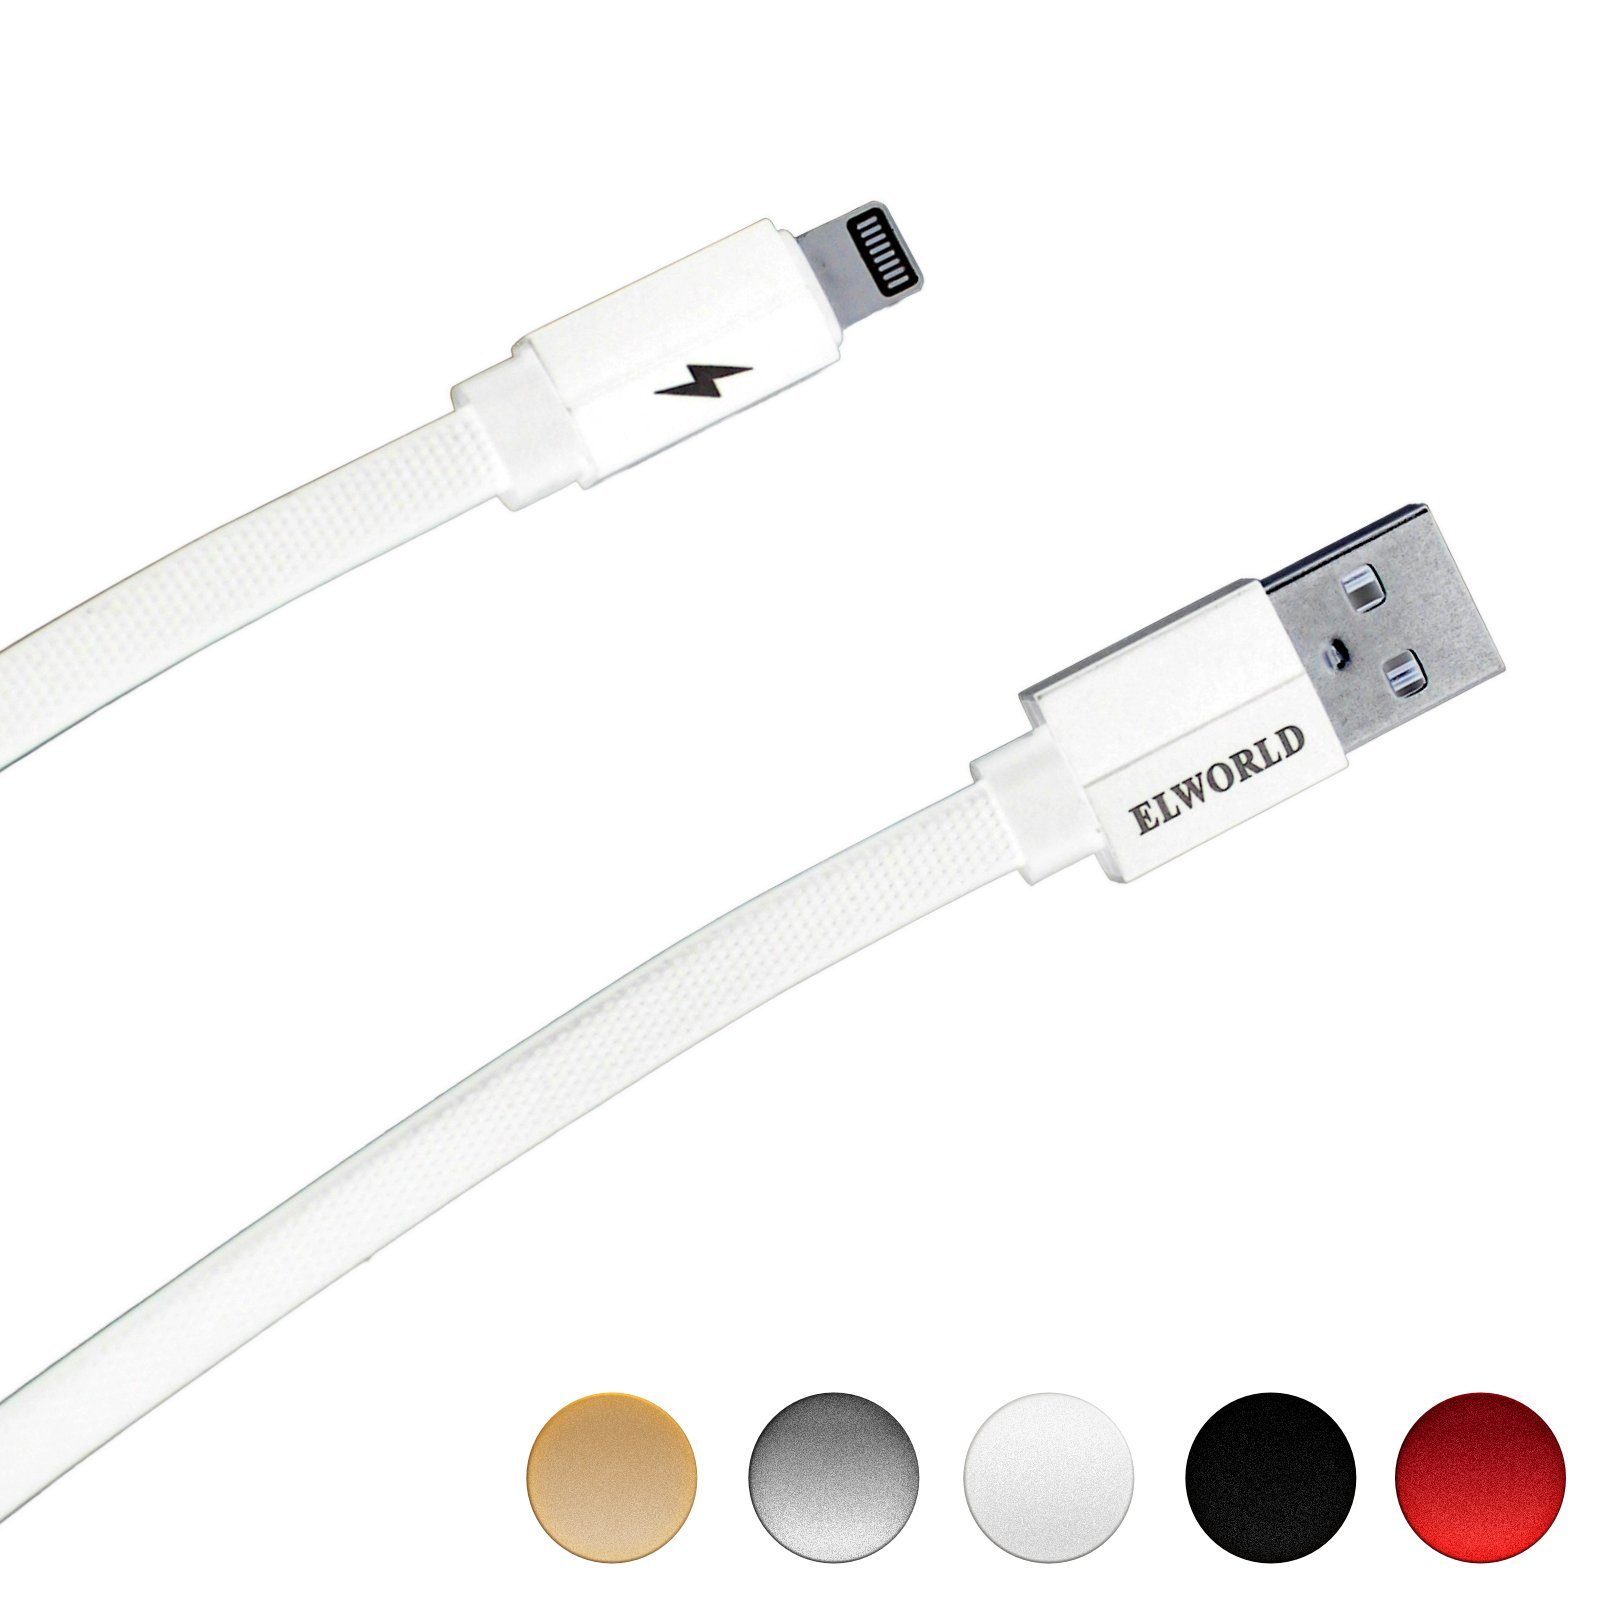 AVADI »iPhone Ladekabel« USB-Kabel, (100 cm), iPhone Schnell Ladekabel USB  Kabel dünn und flach 3A High-Speed Datenkabel -1 M, Anti-Bruch, USB Typ C  kompatibel mit iPhone 13, 13 Pro, 12, 11, 11